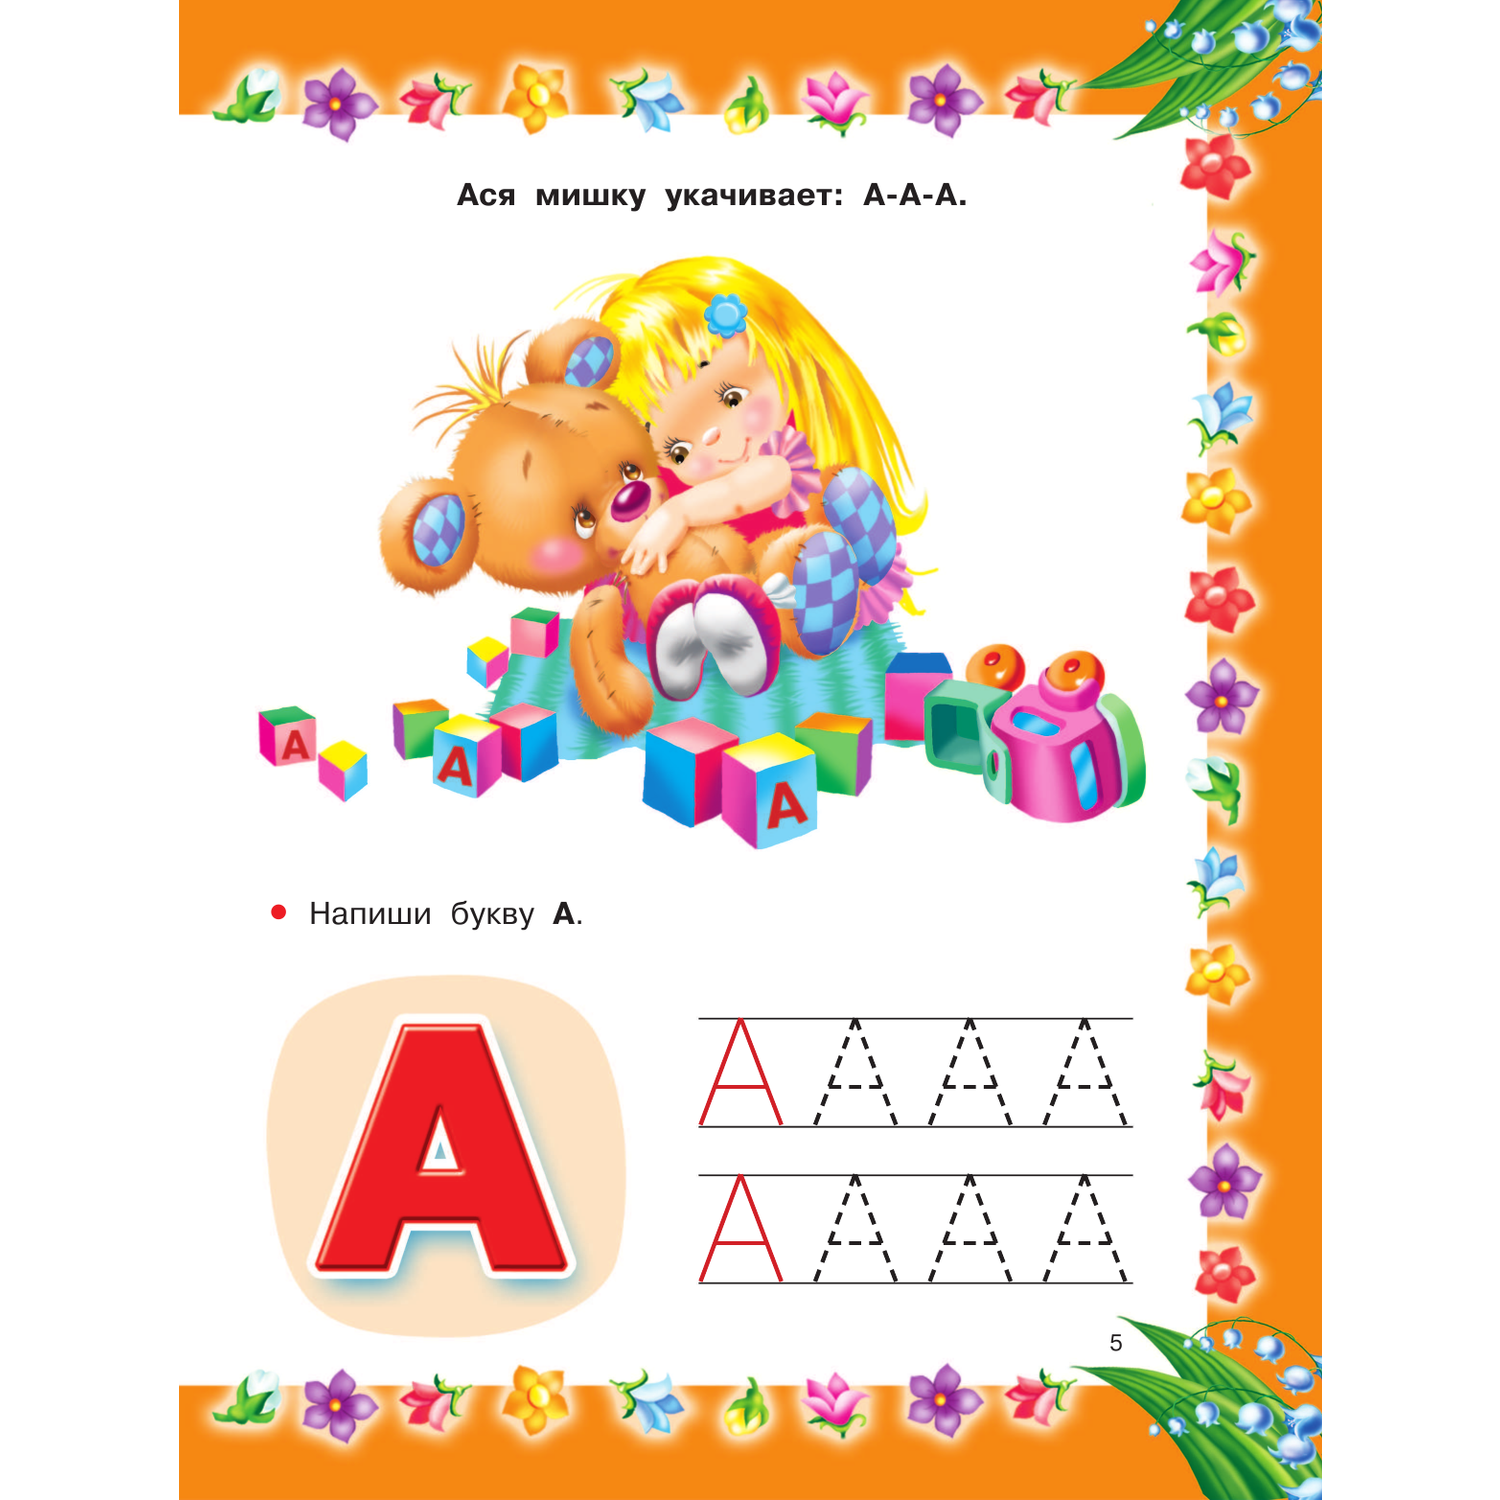 Книга АСТ Азбука с крупными буквами для самых маленьких - фото 7